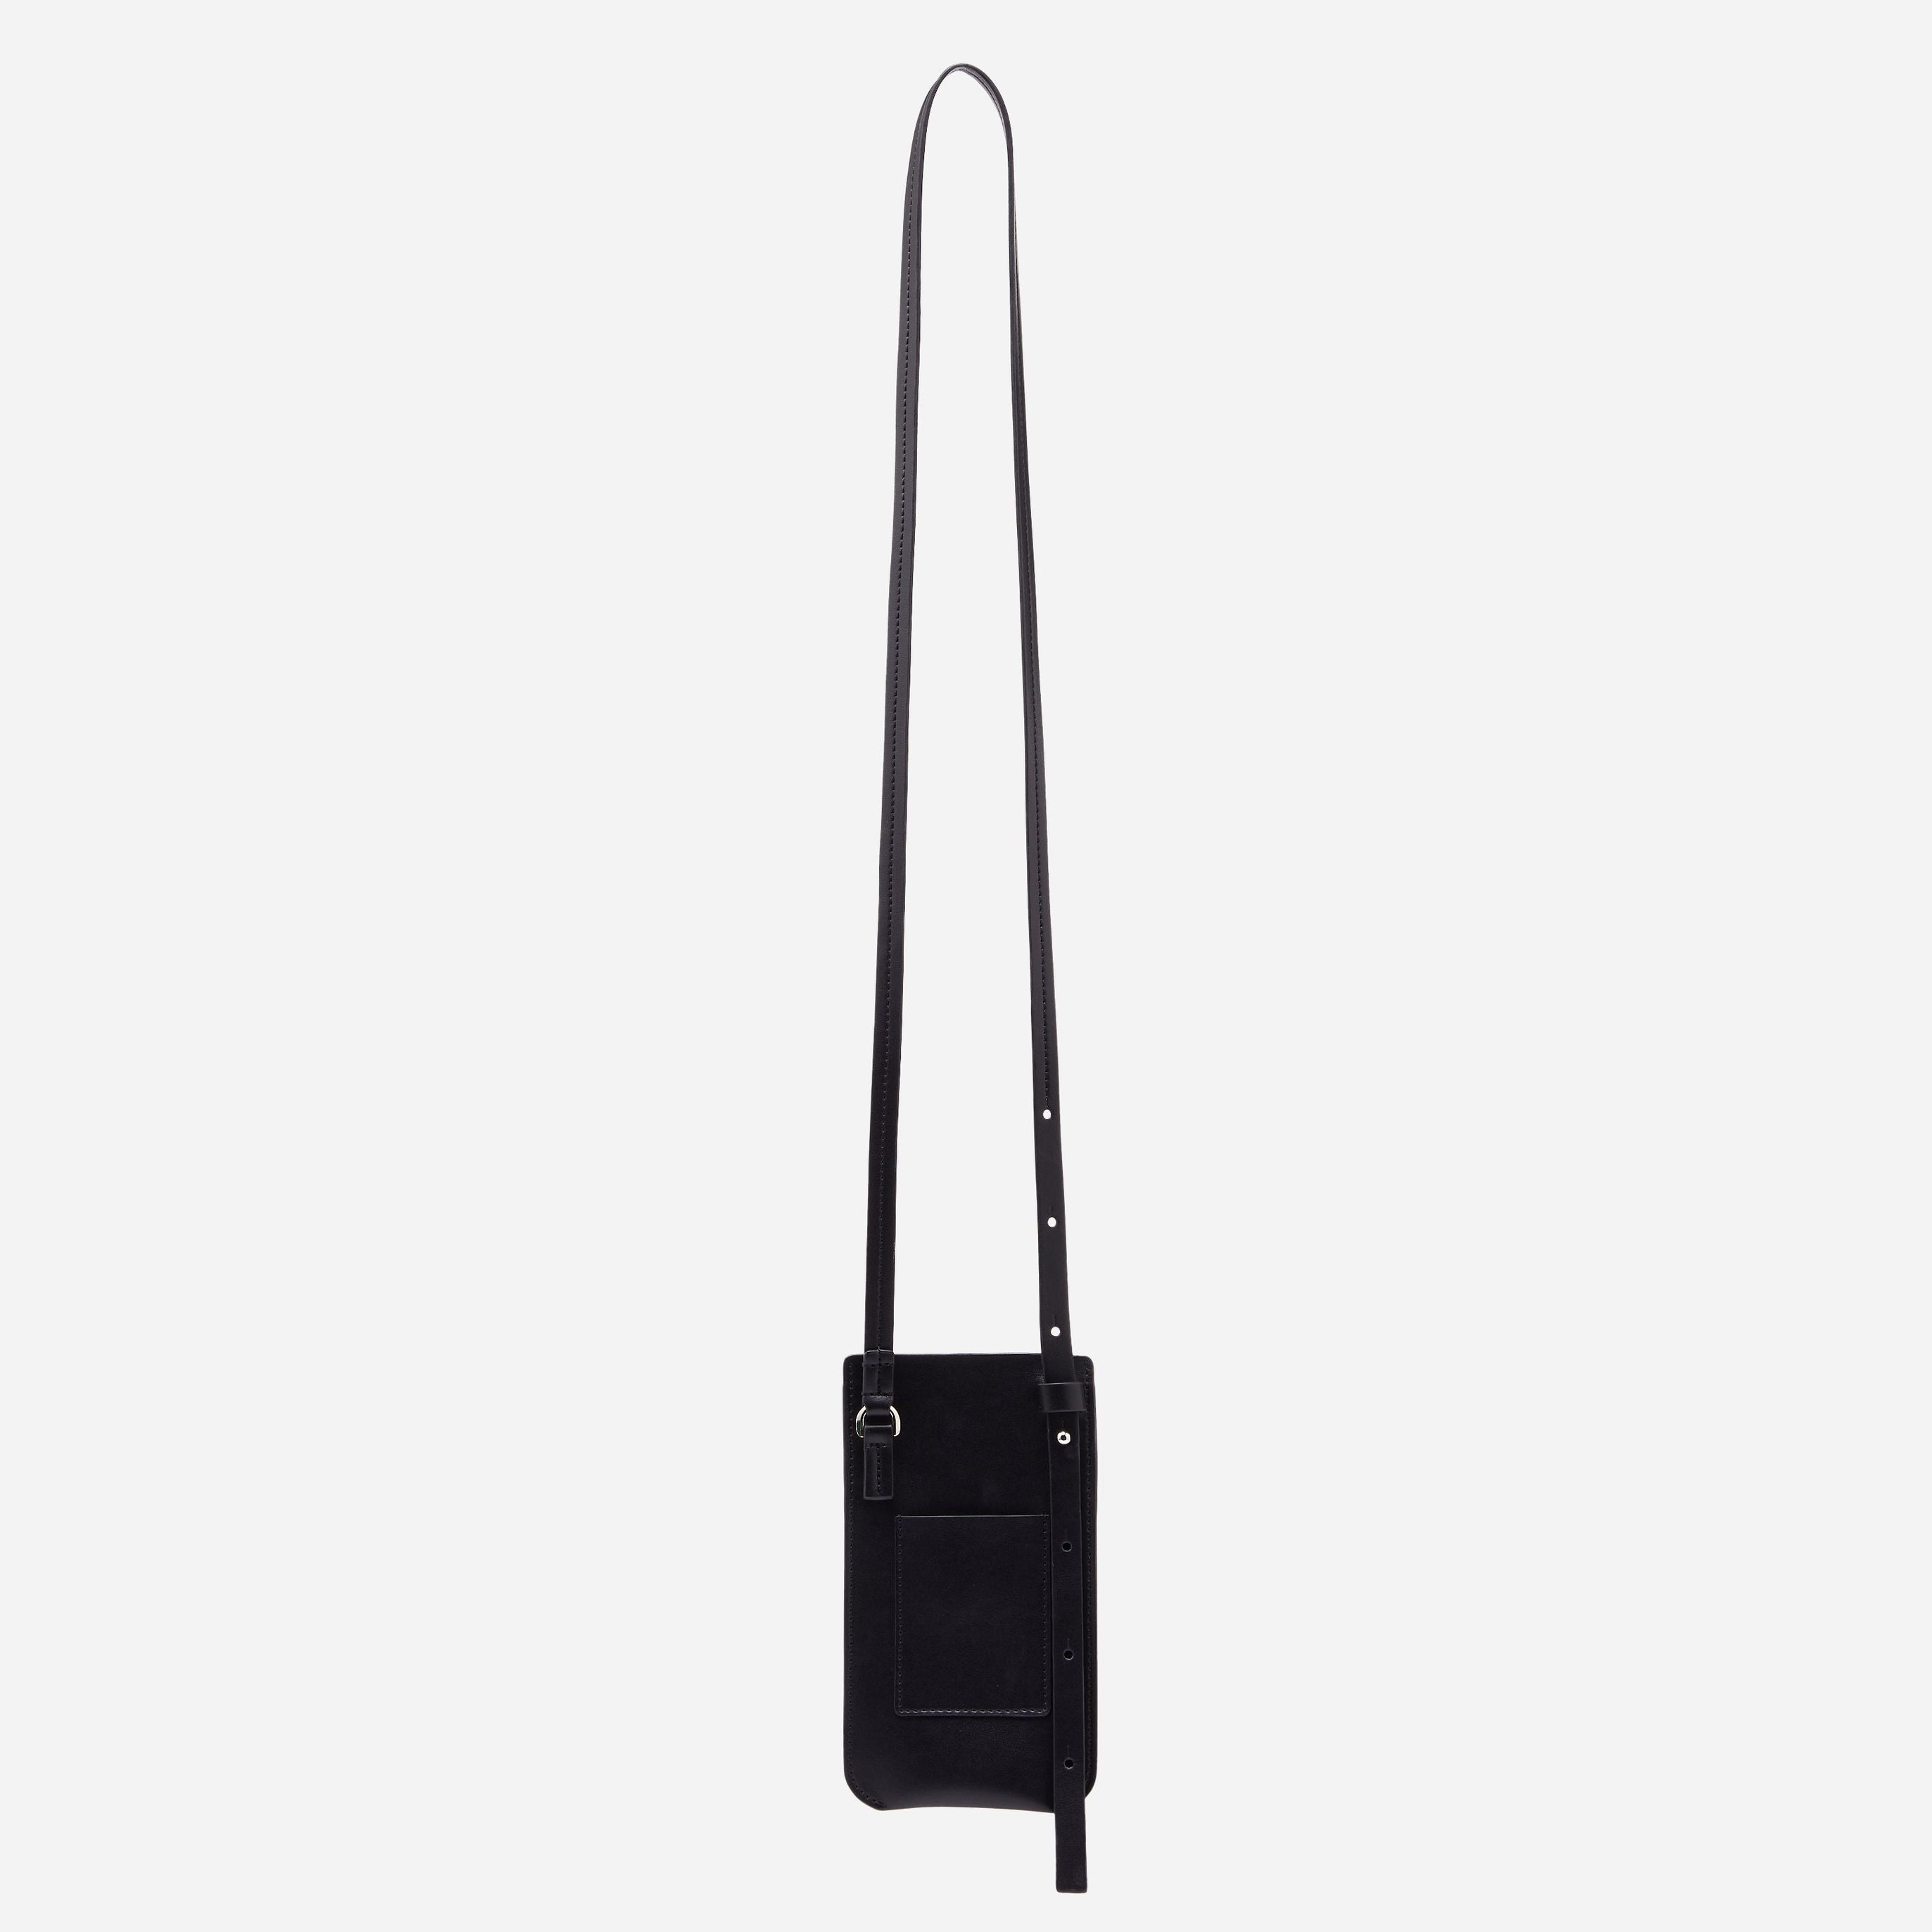 Elia Vegan Phone Bag in Black Onyx longest strap showing back card holder pocket 